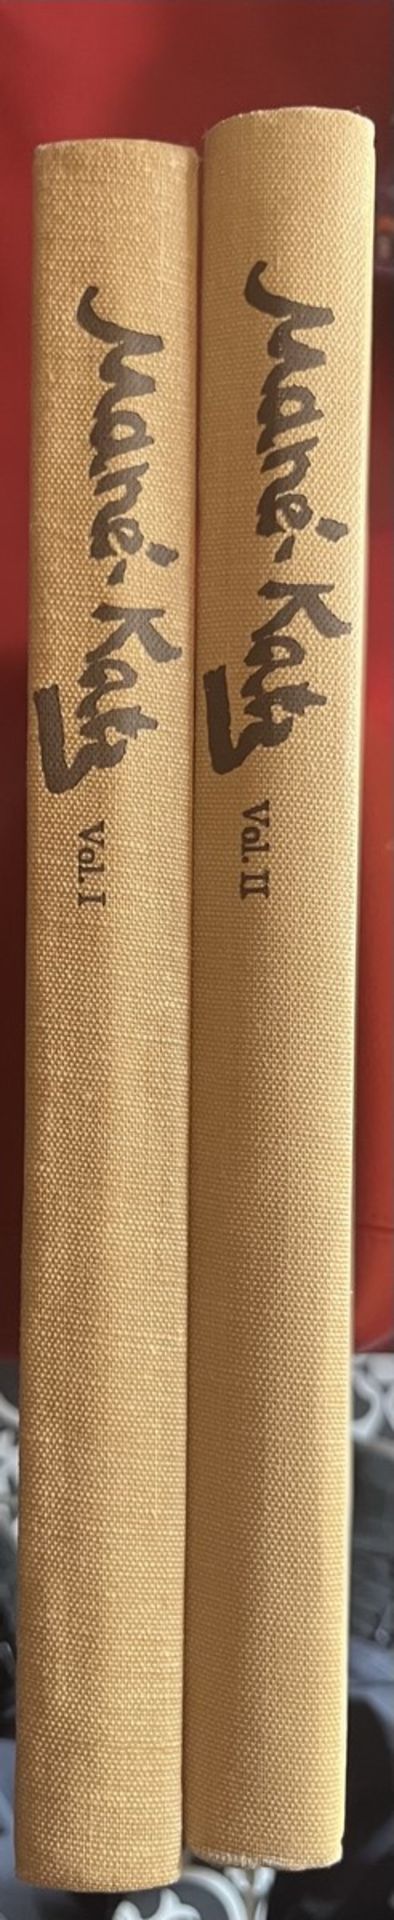 [MANE- KATZ]- l’Oeuvre complète, 2 vols. 1894-1962 .L’Oeuvre complète (2 Volumes Set) - Image 5 of 6